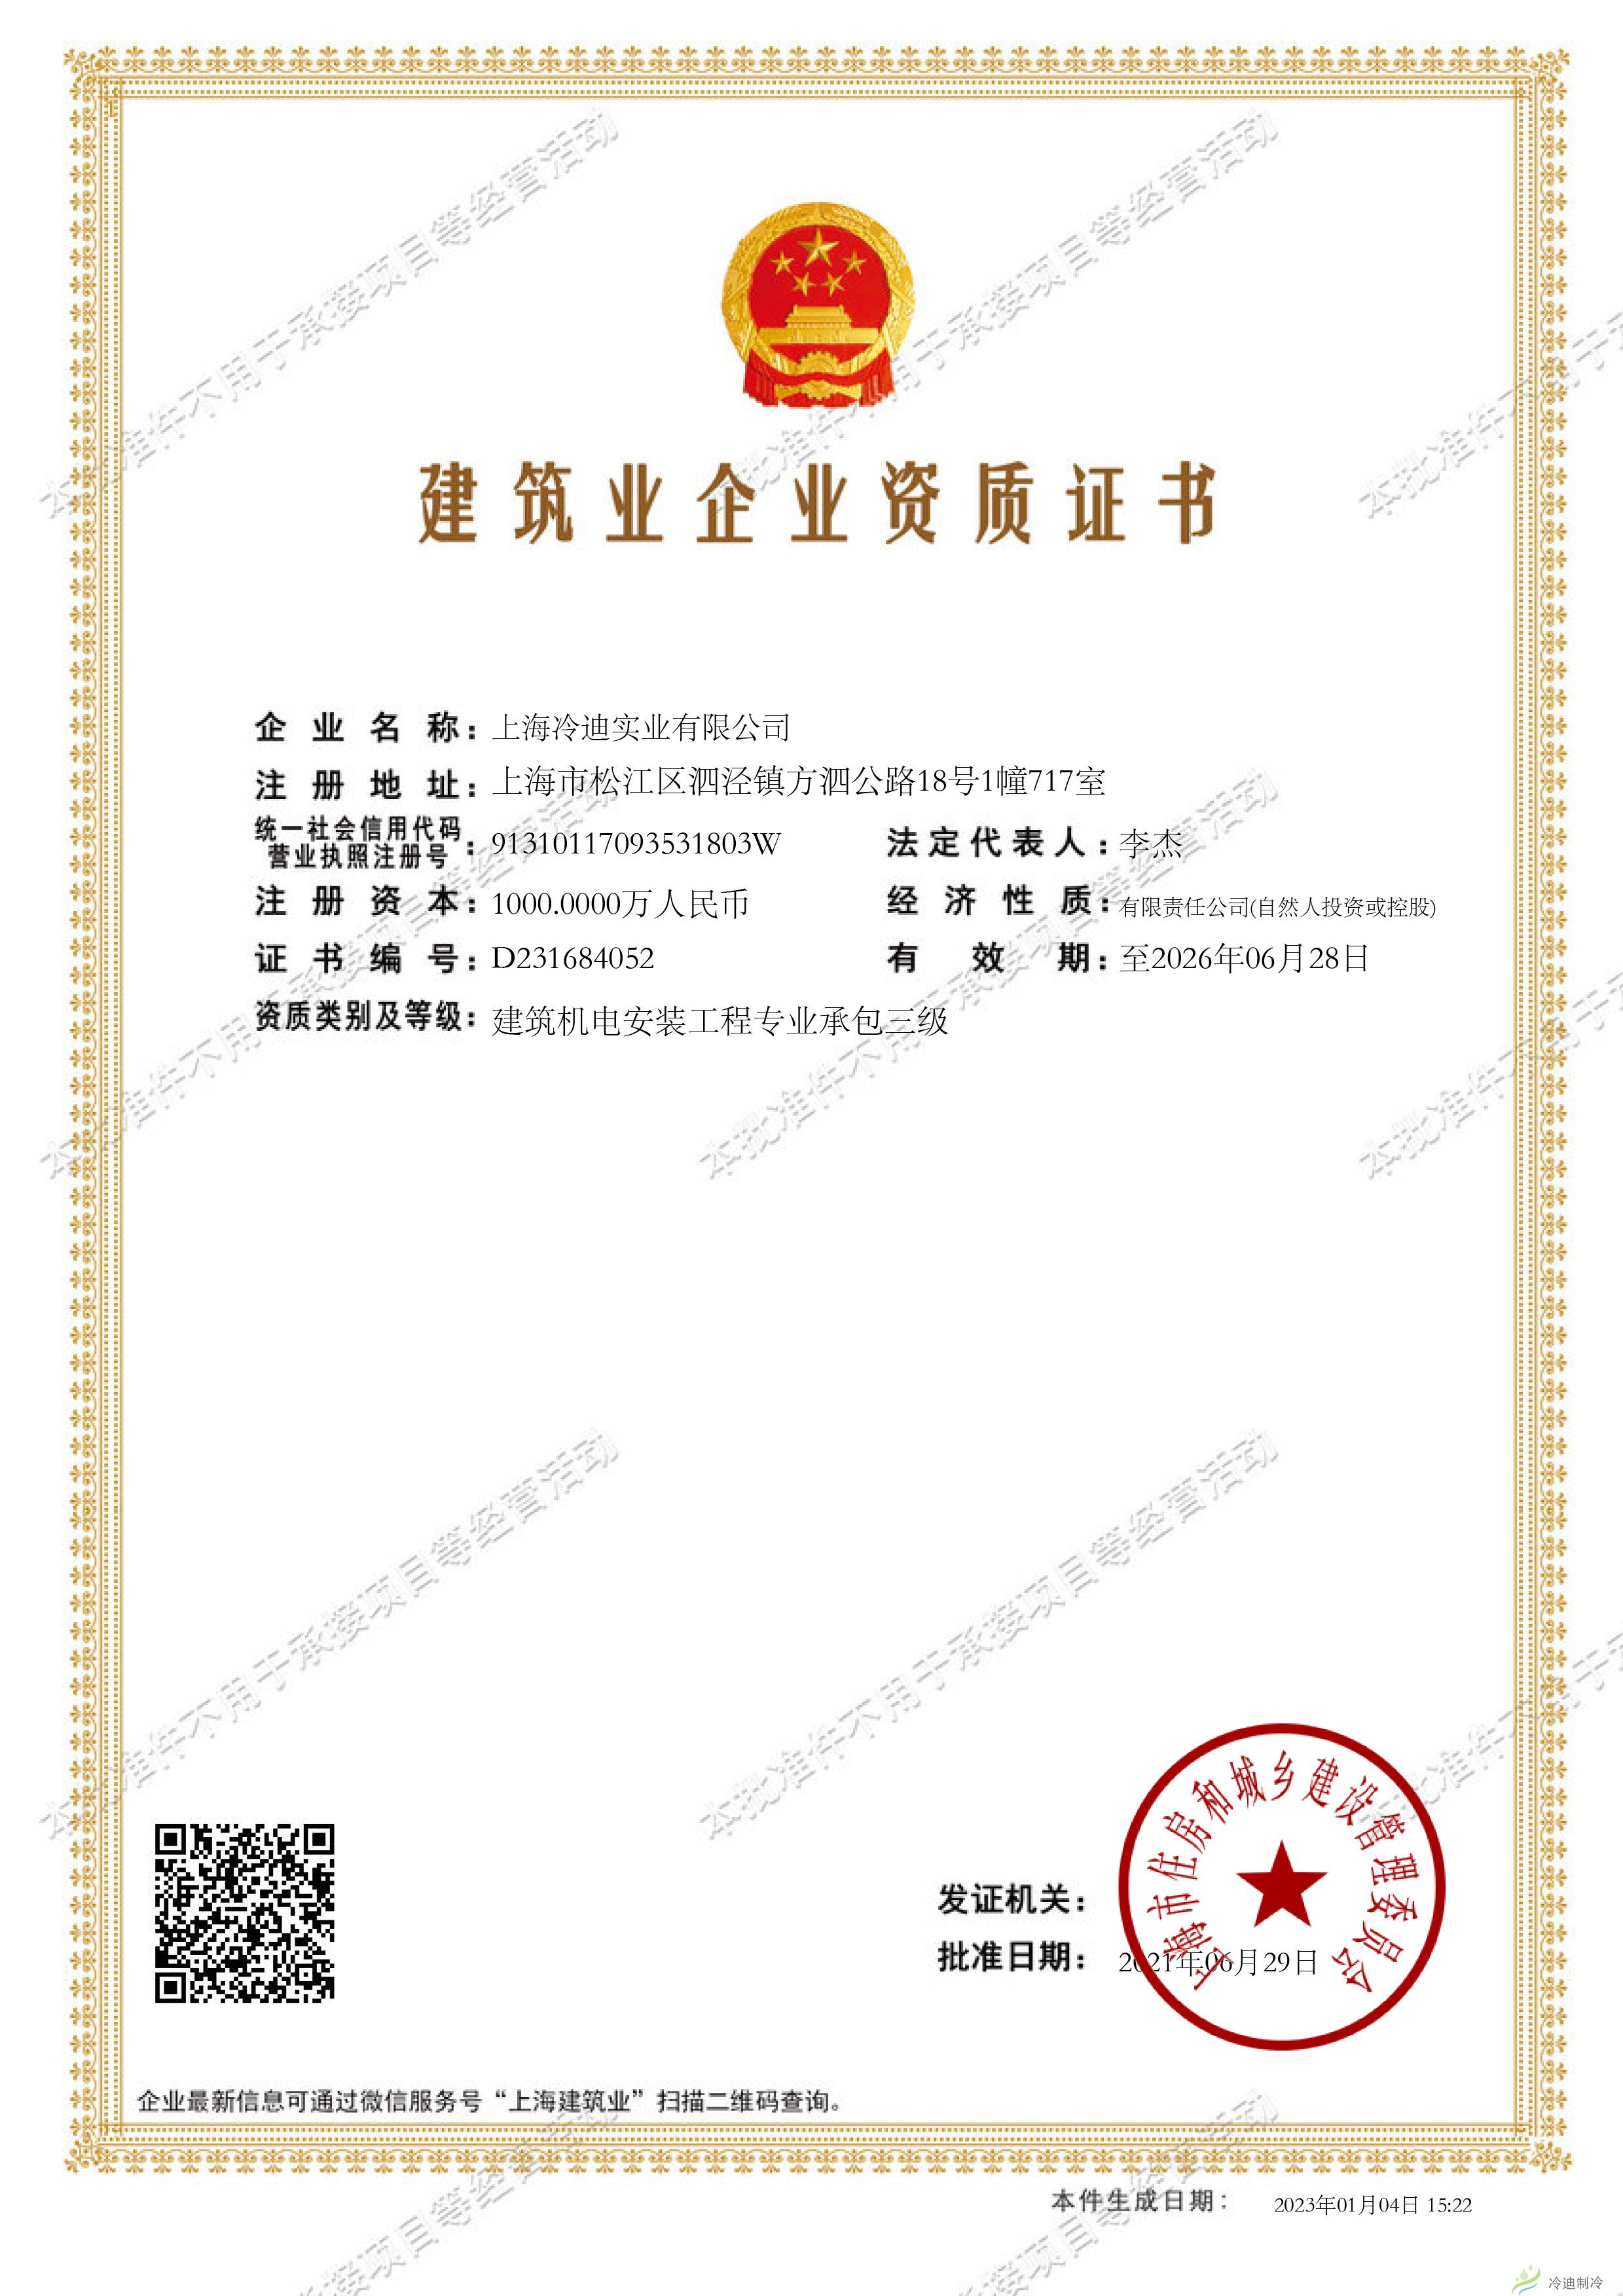 上海冷迪实业有限公司建筑业企业资质证书-202301041525212861.jpg